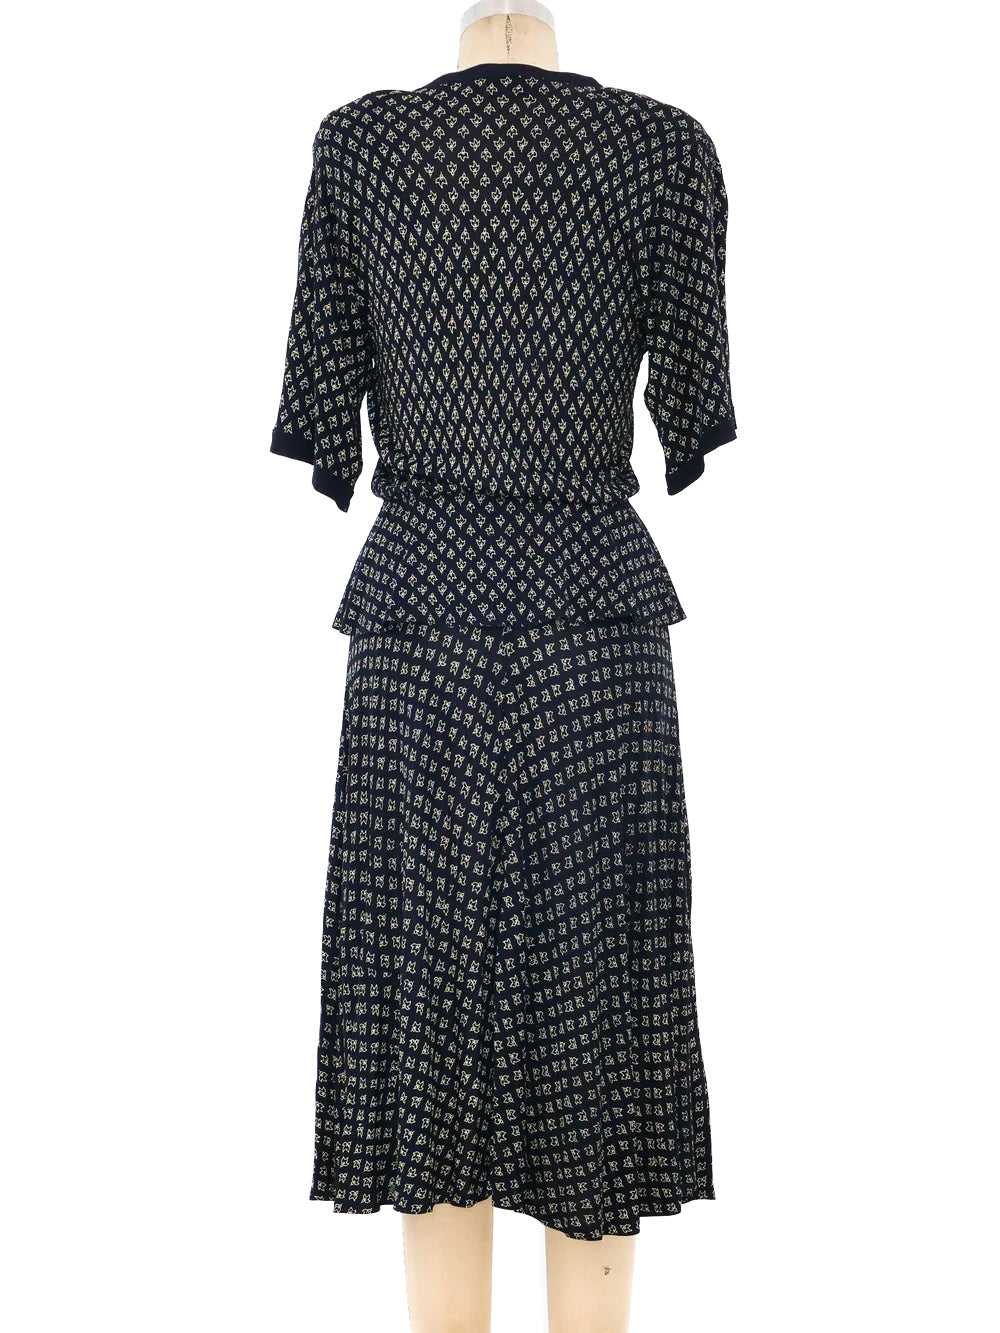 Jean Muir Peplum Jersey Dress - image 3